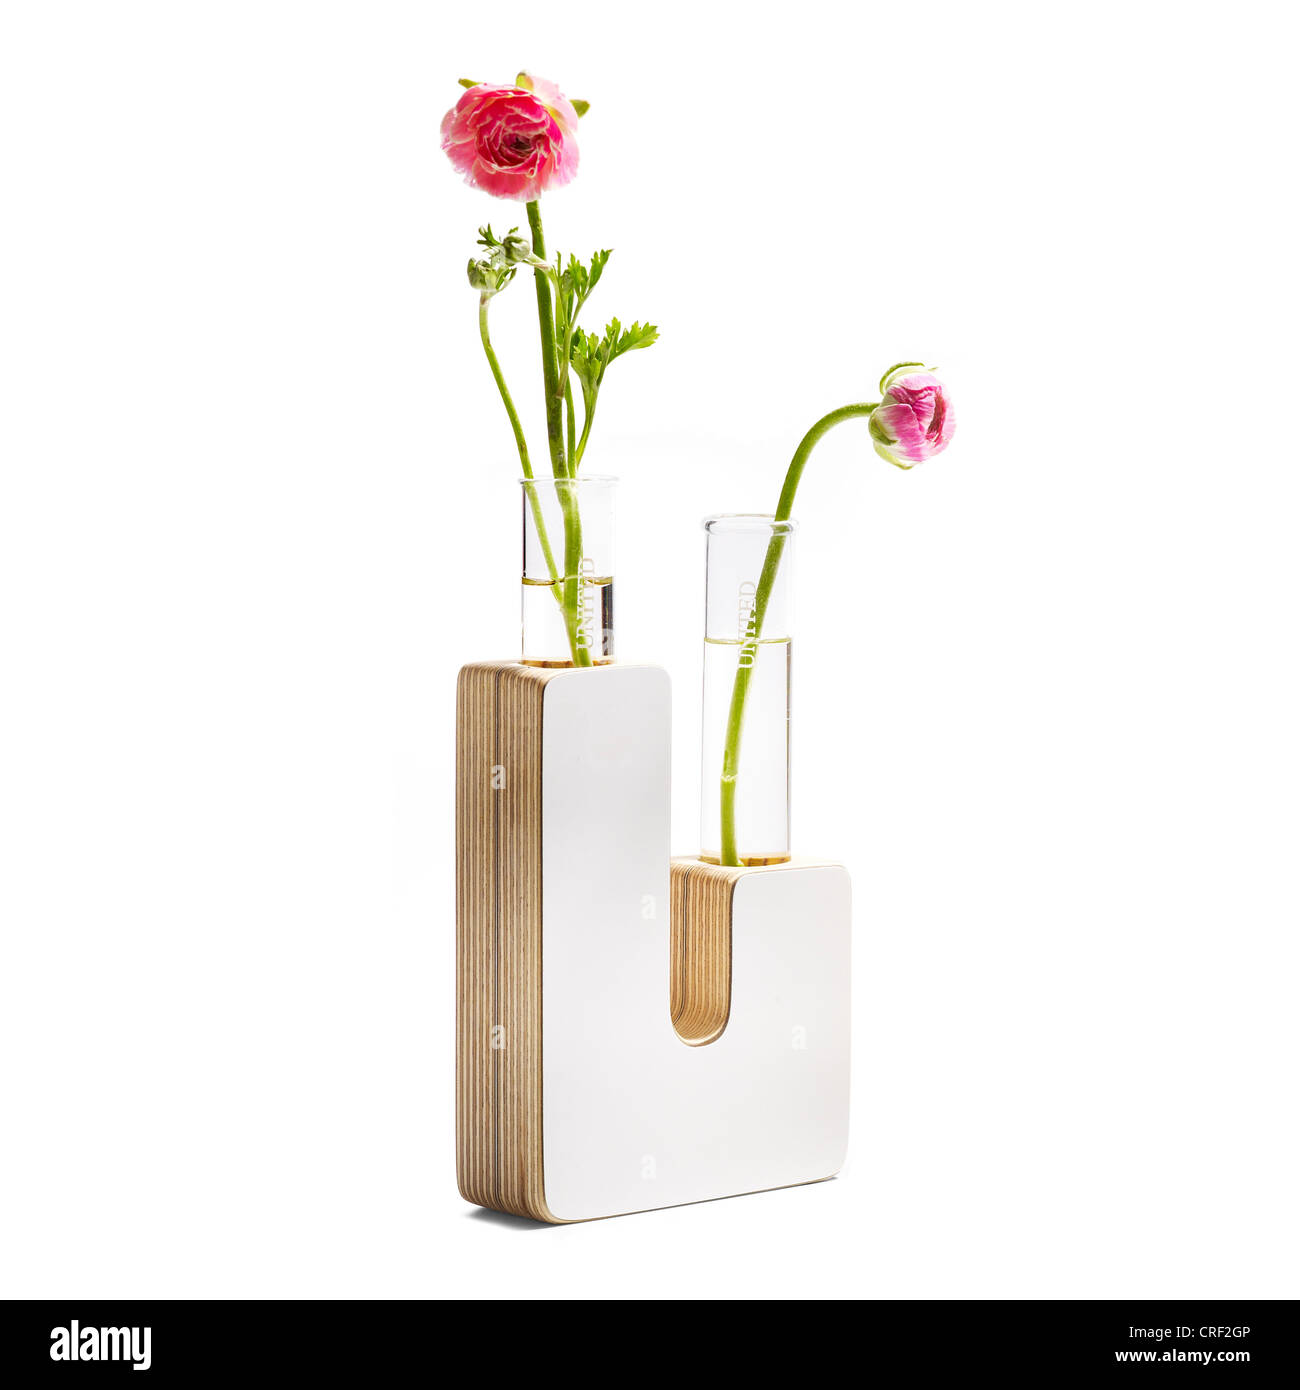 U-Shaped vase with ranunculus flowers Stock Photo